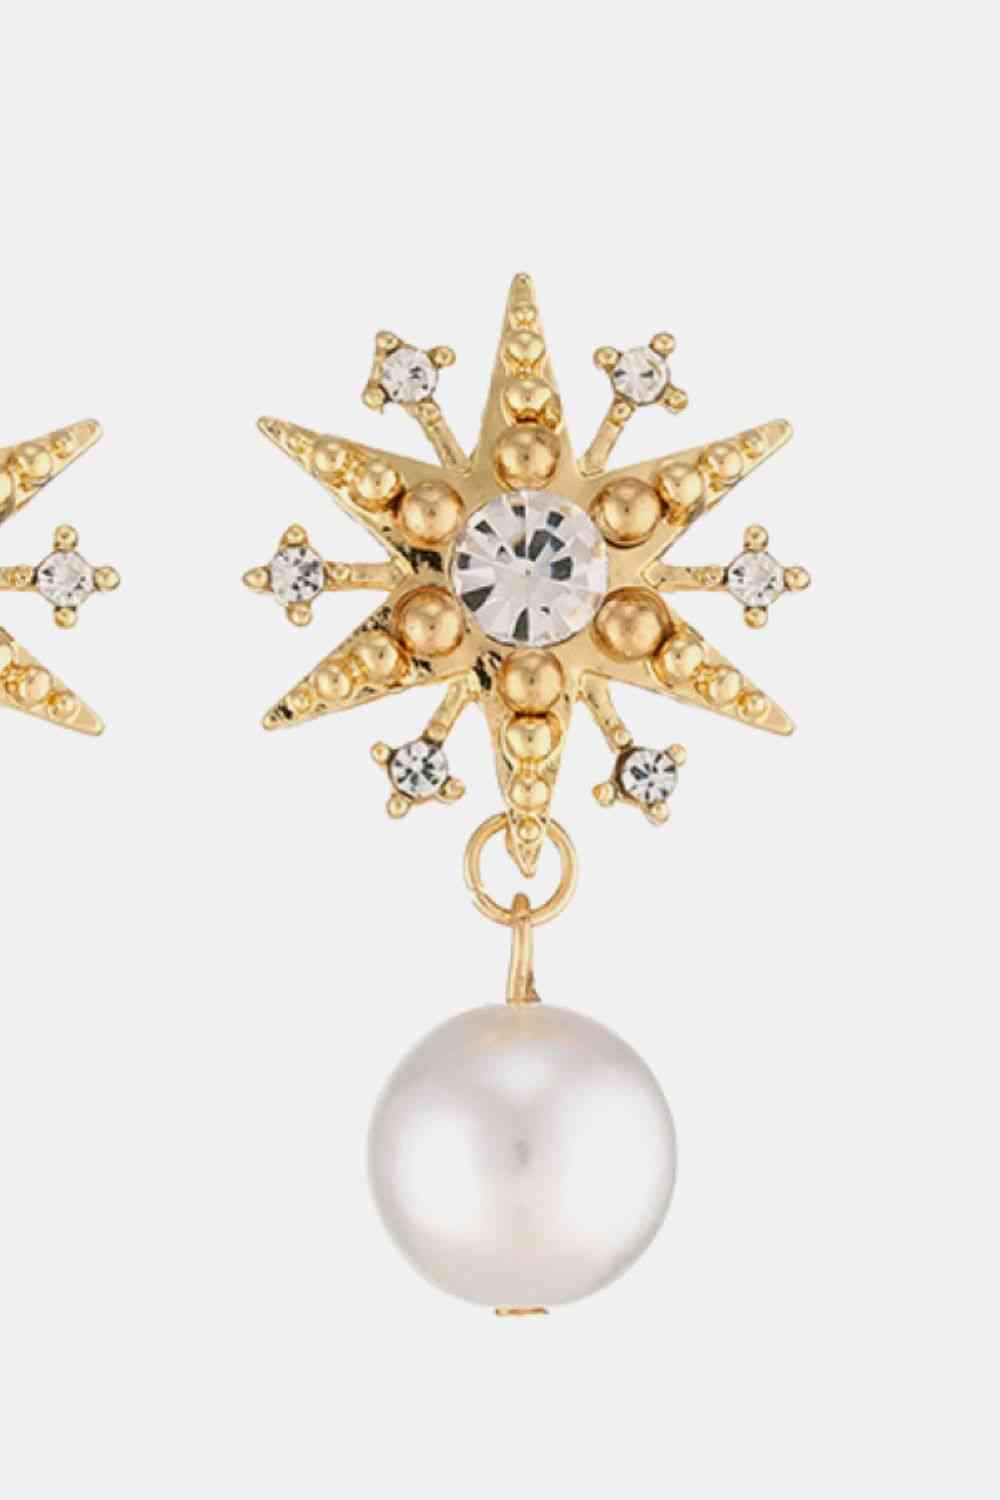 Synthetic Pearl Star Shape Alloy Earrings